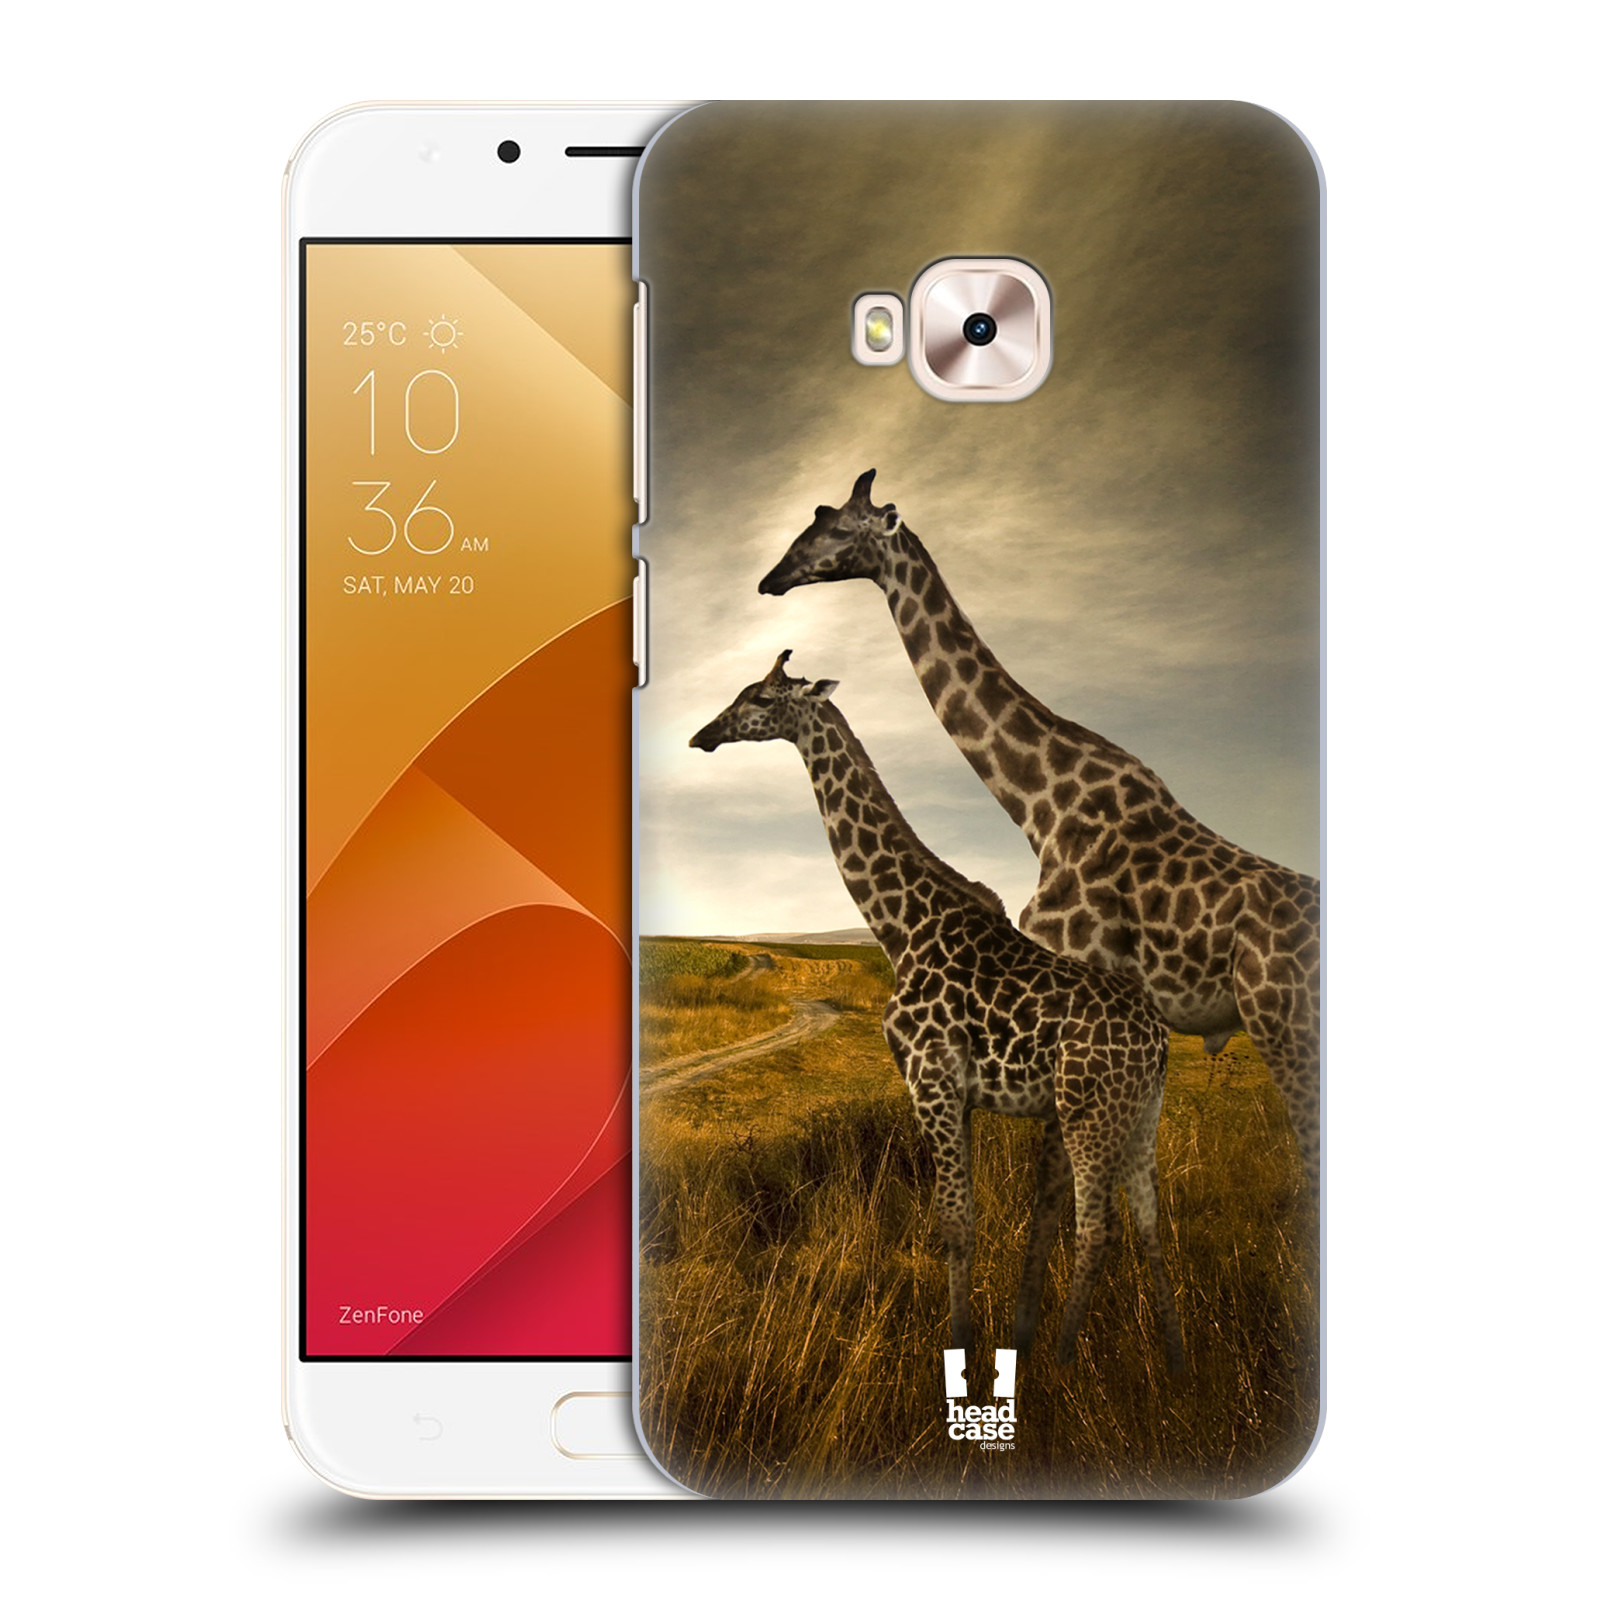 Zadní obal pro mobil Asus Zenfone 4 Selfie Pro ZD552KL - HEAD CASE - Svět zvířat žirafy